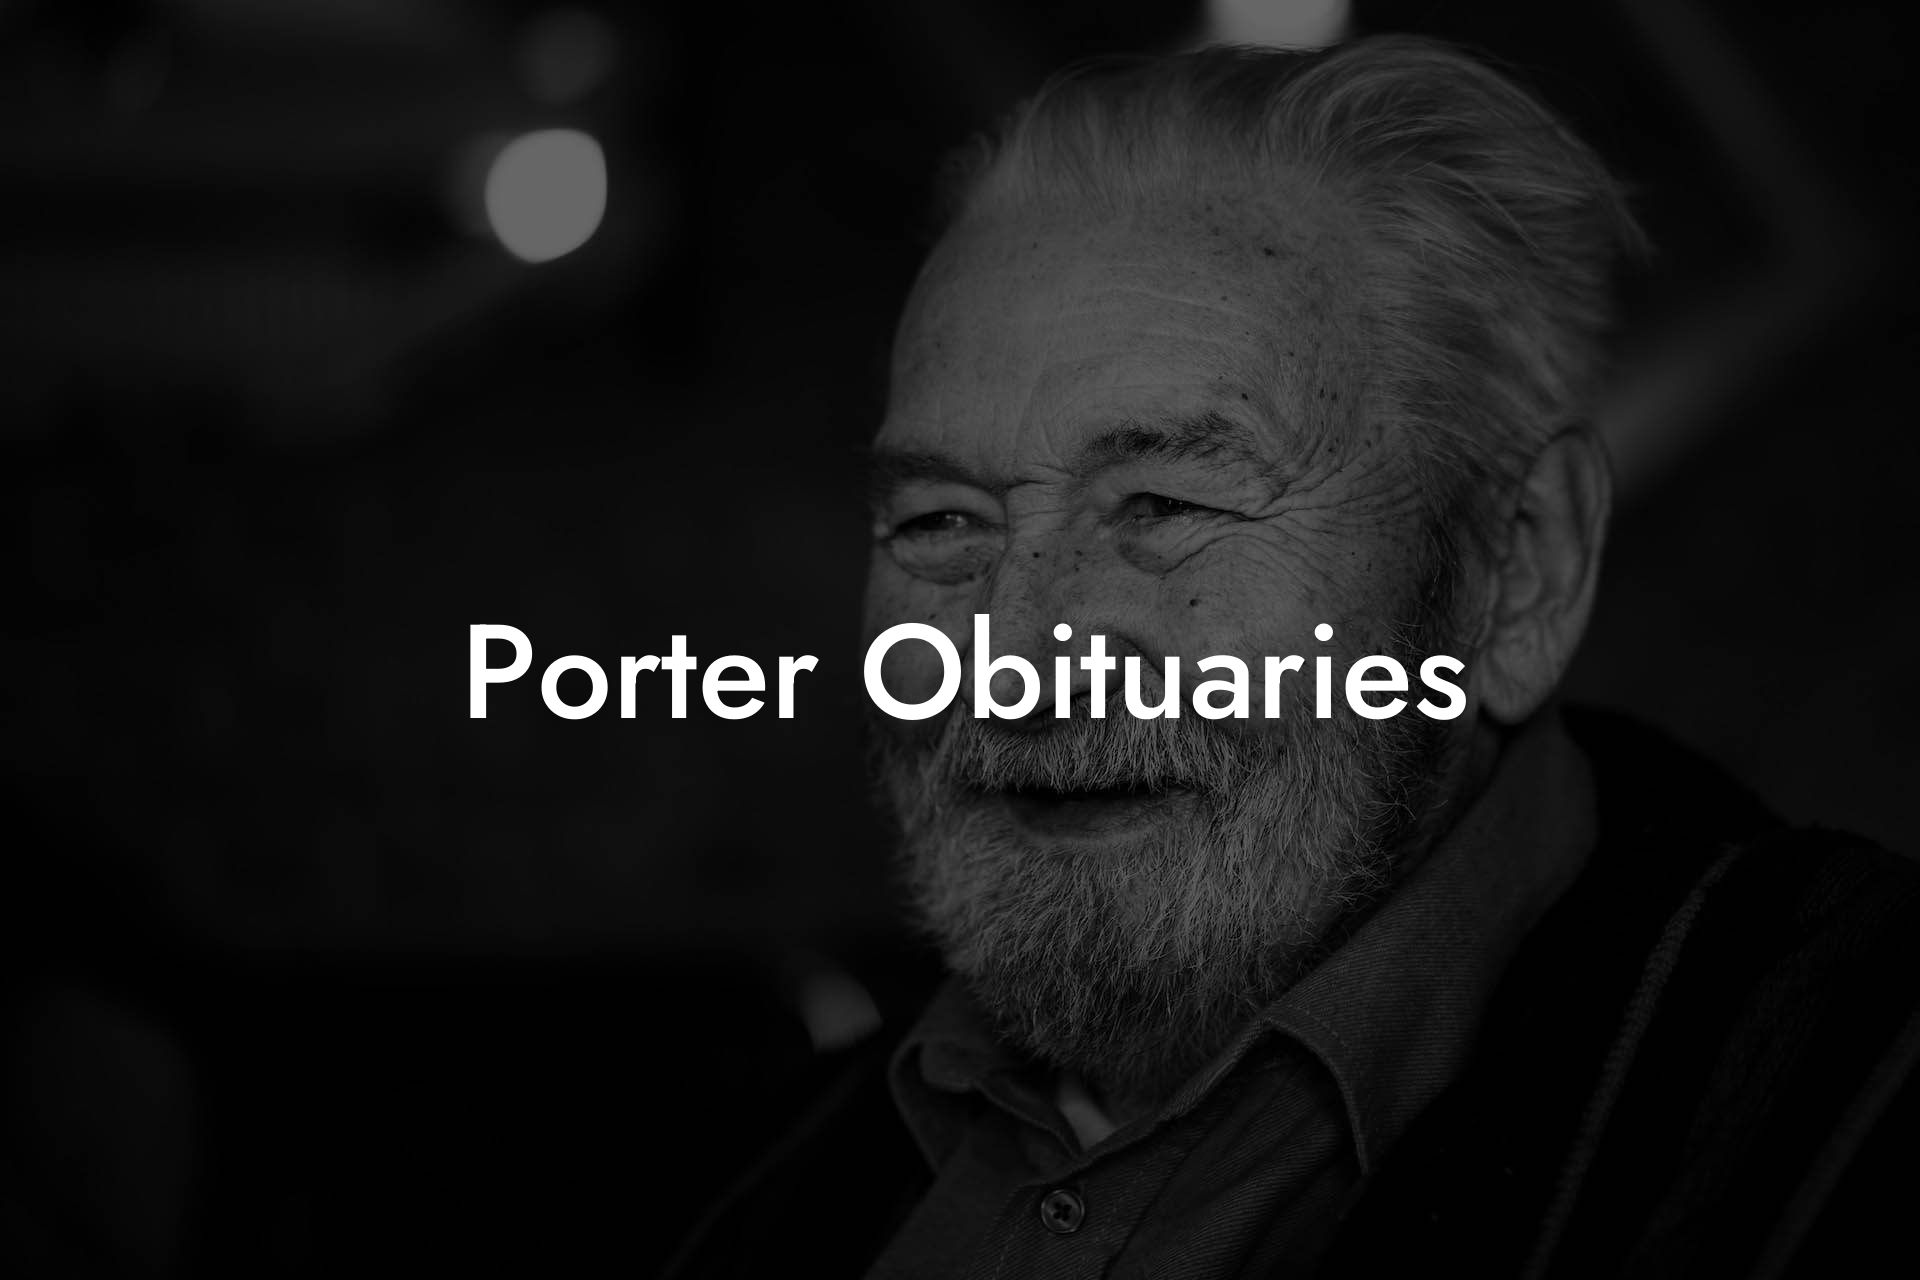 Porter Obituaries